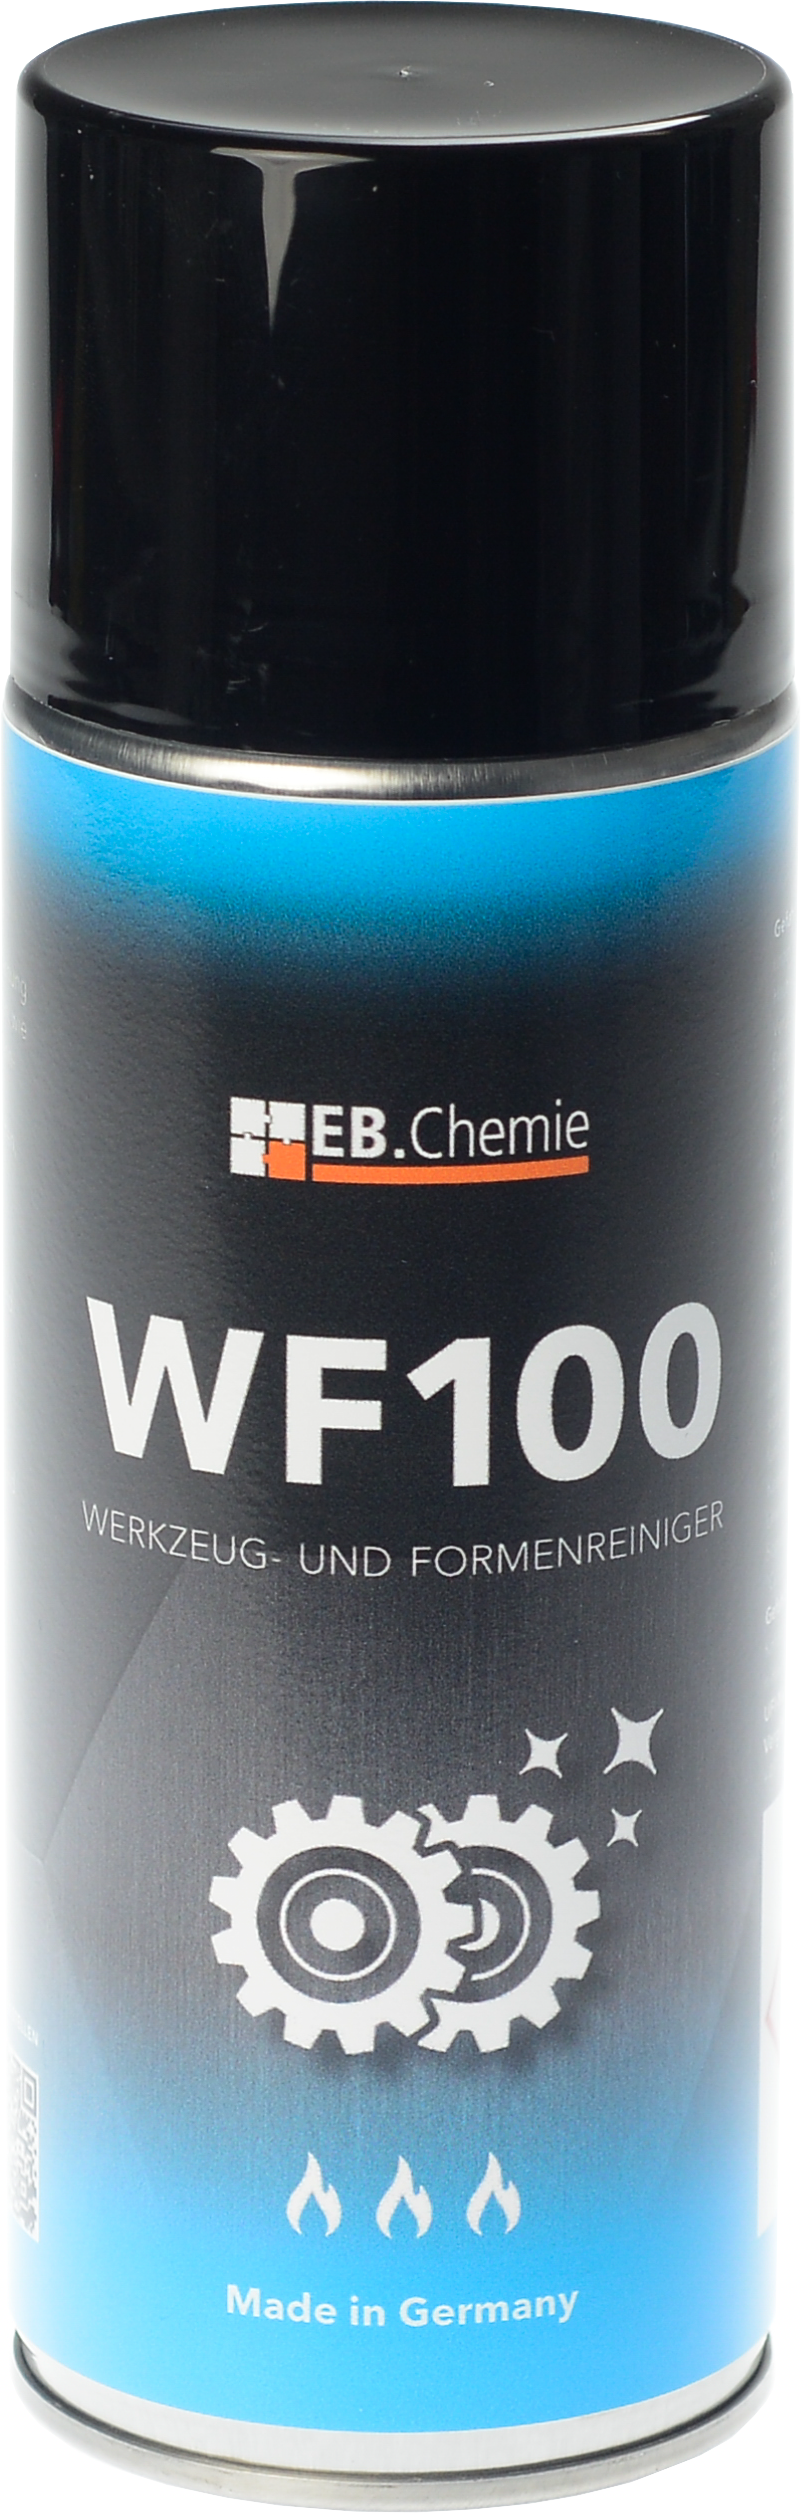 WF100 - Werkzeug- und Formenreiniger